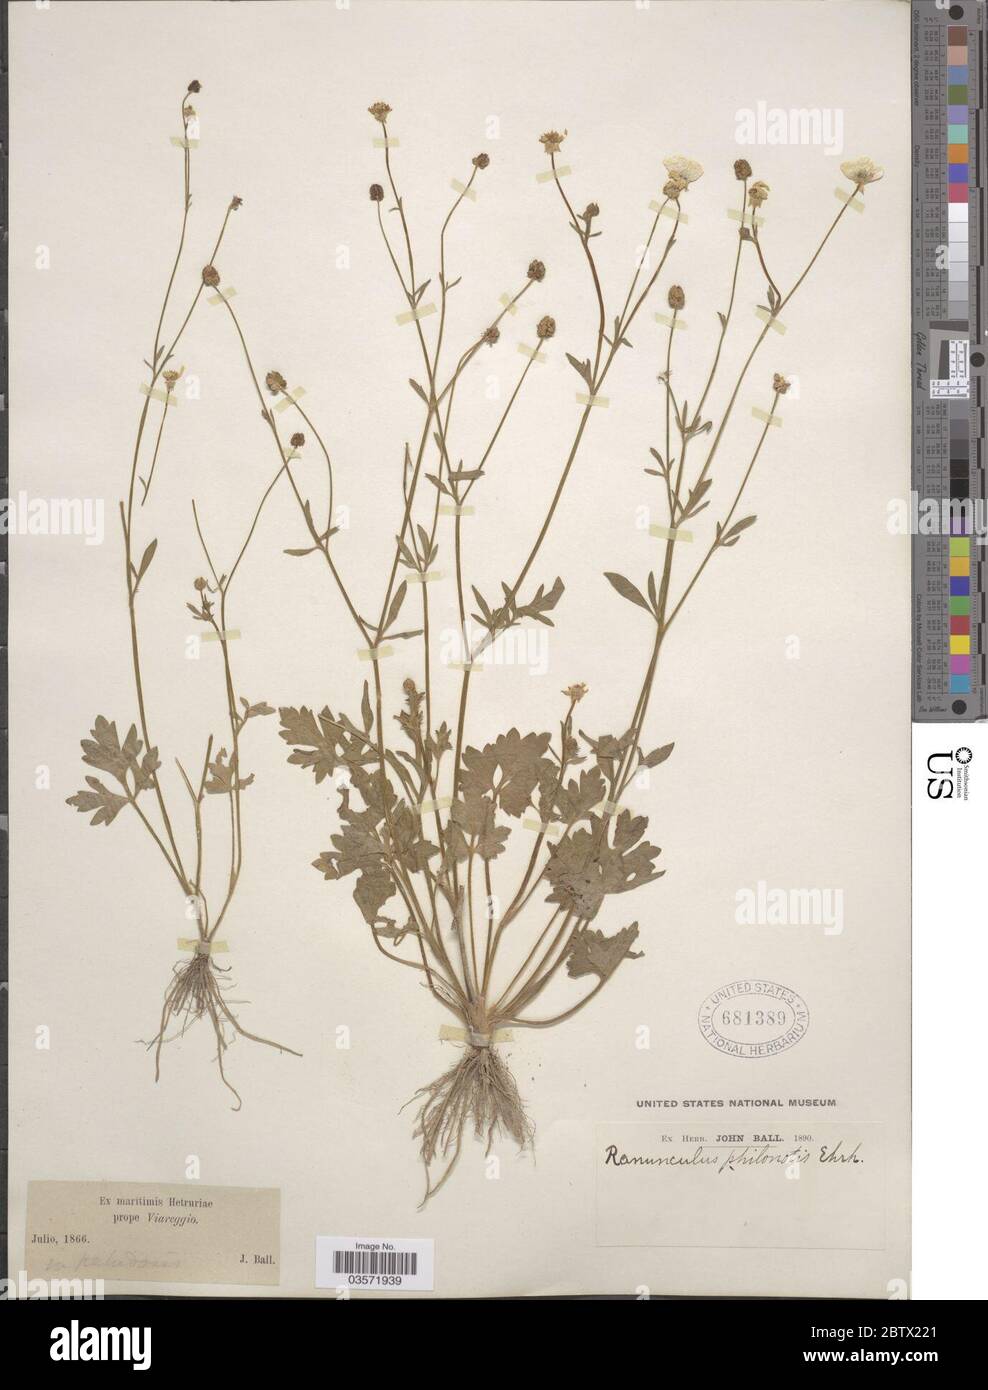 Ranunculus philonotis Ehrh. Stock Photo